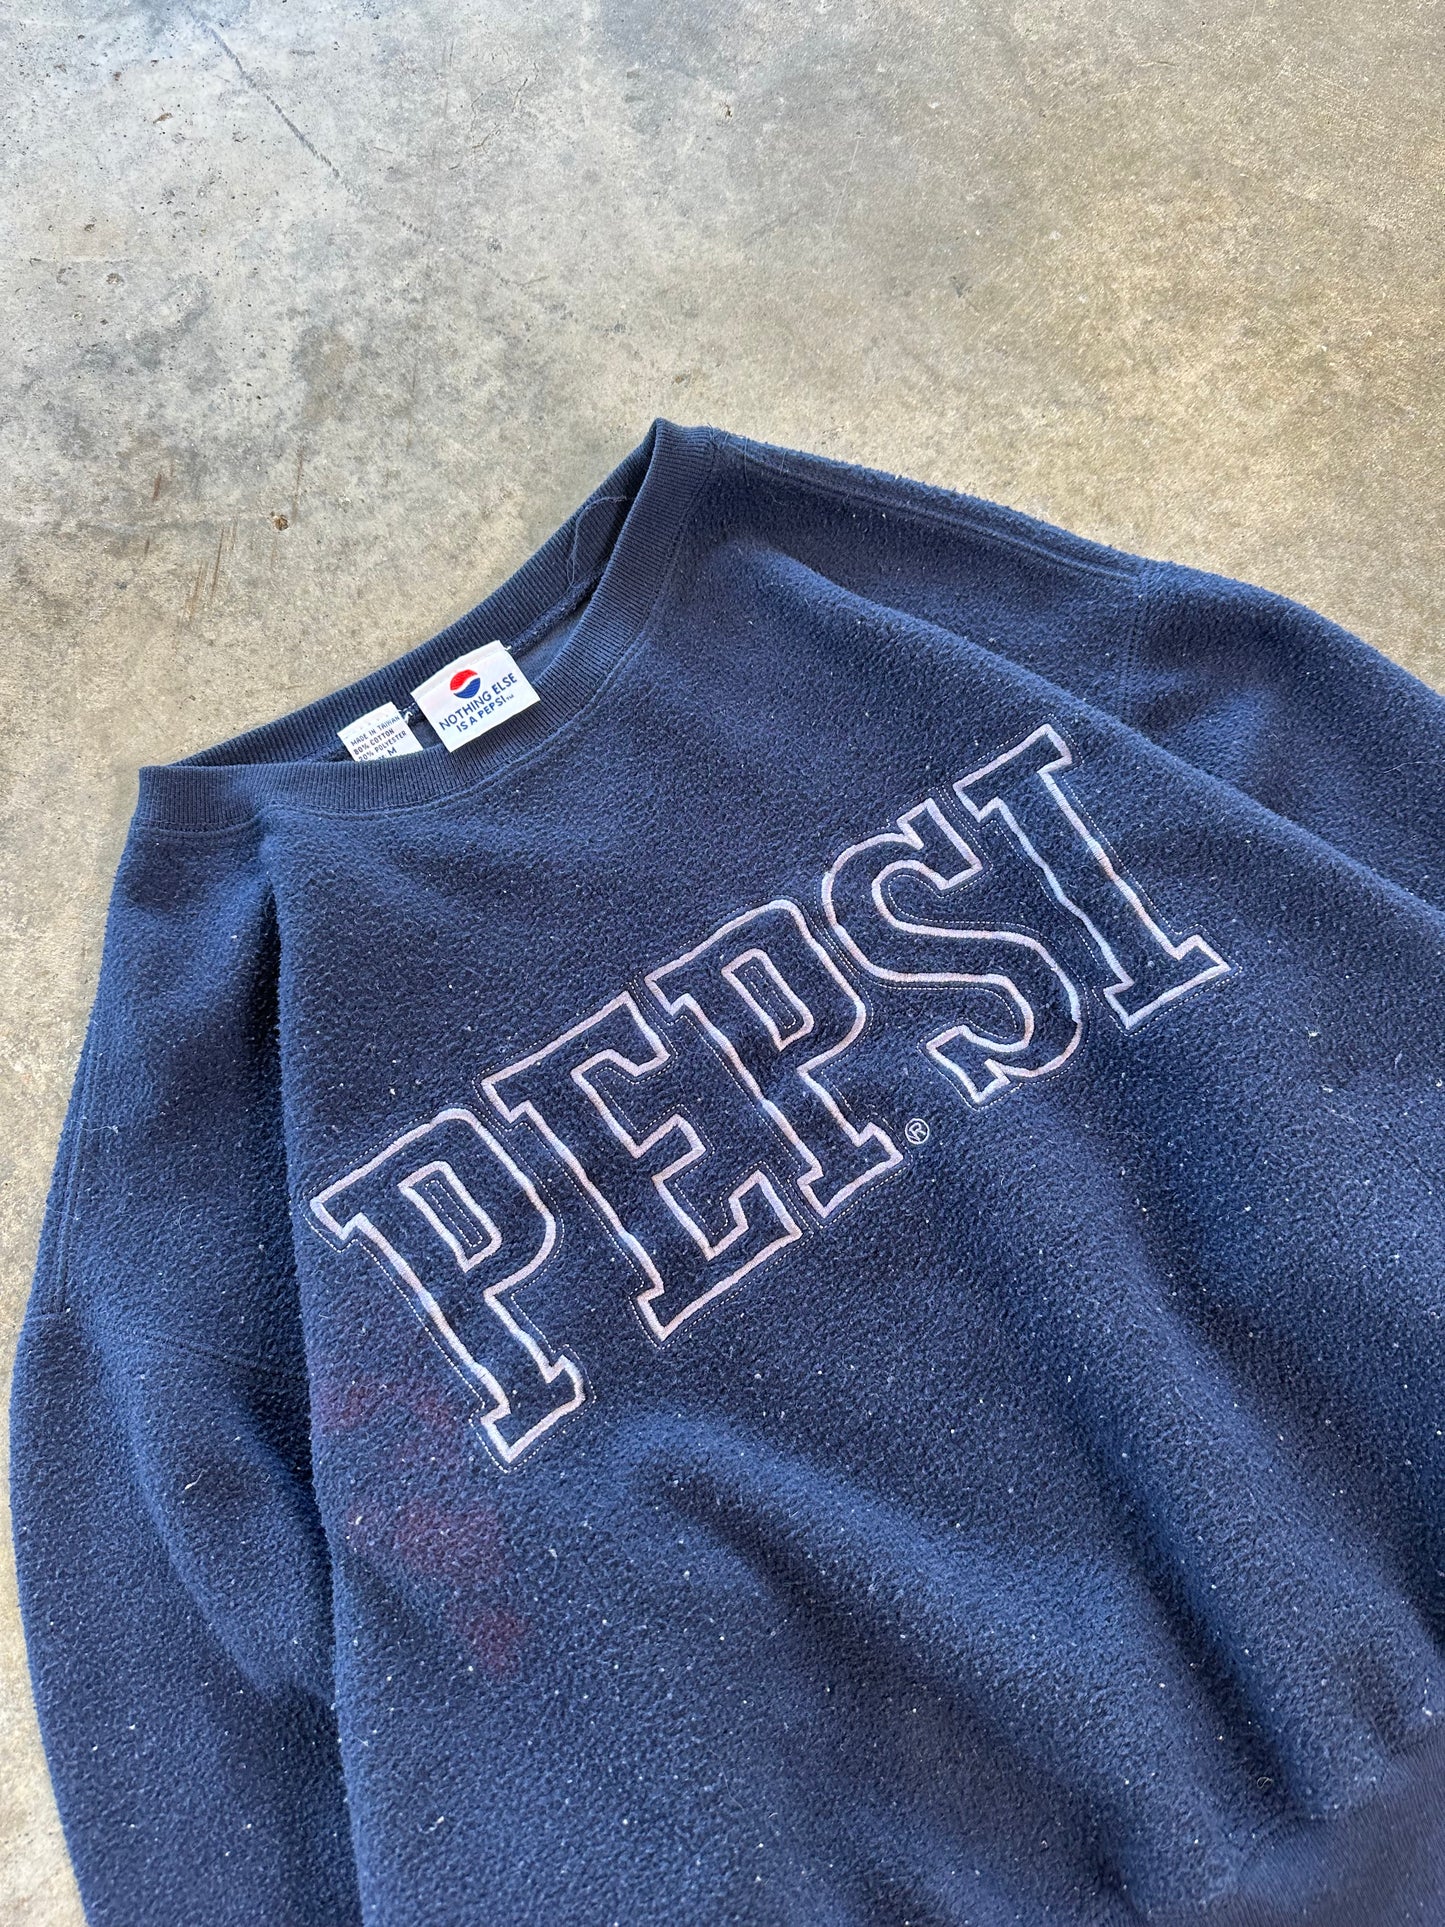 (M) Vintage Pepsi Fleece Sweatshirt